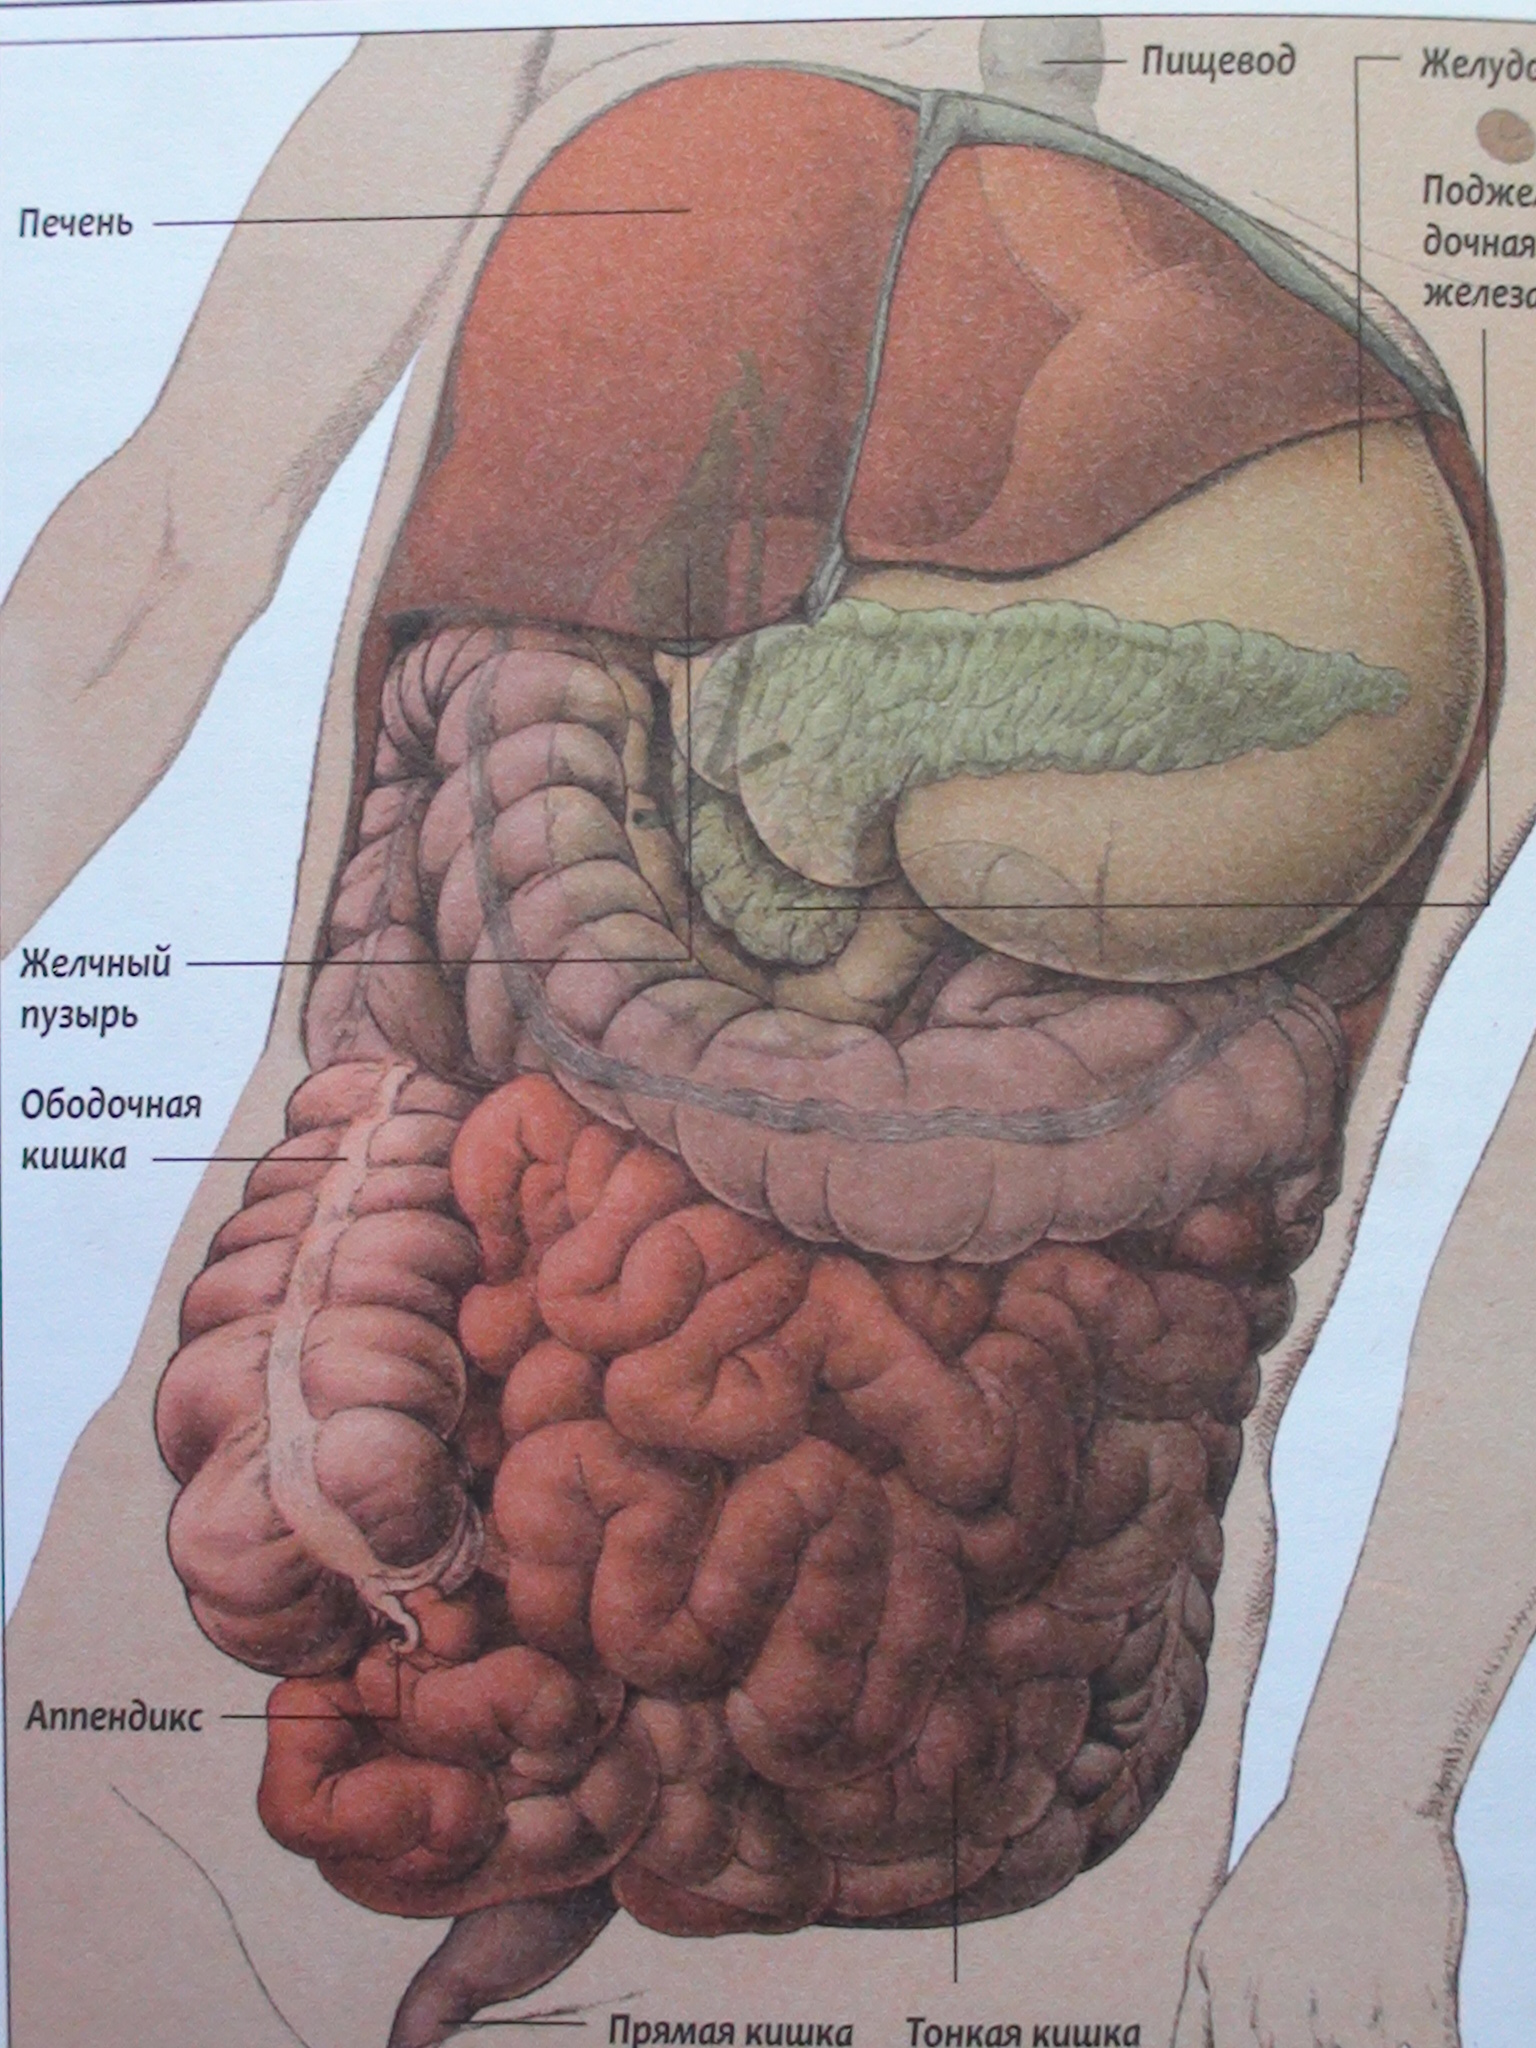 Желудок под печенью. Анатомия человека внутренние органы брюшной полости. Строение кишечника человека схема. Анатомия кишечника брюшной полости человека. Расположение кишечника анатомия.